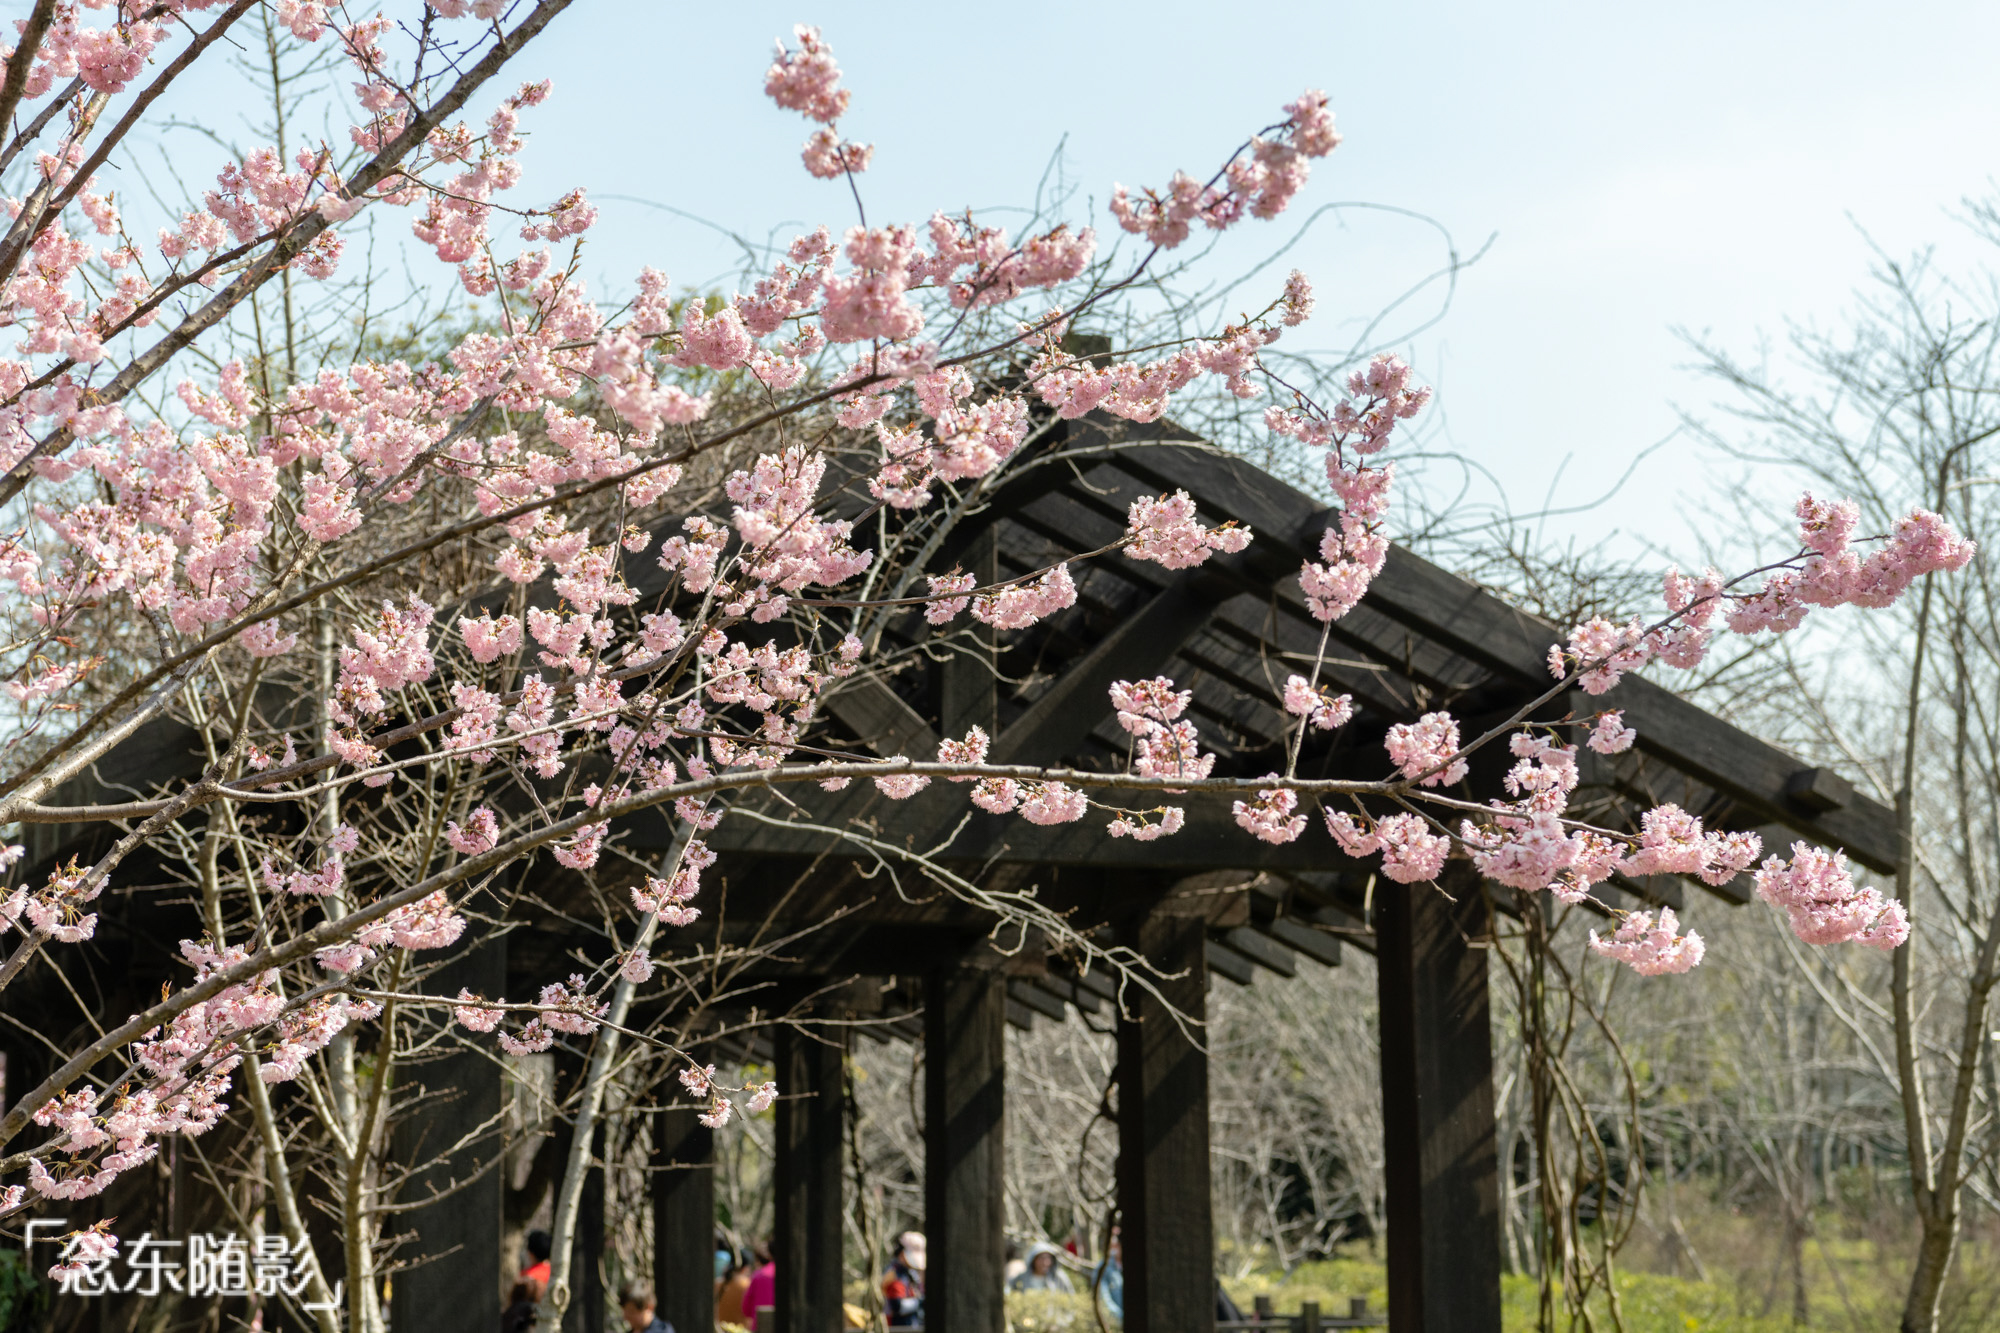 樱花开了!上海顾村公园繁花满枝头,赏樱好去处